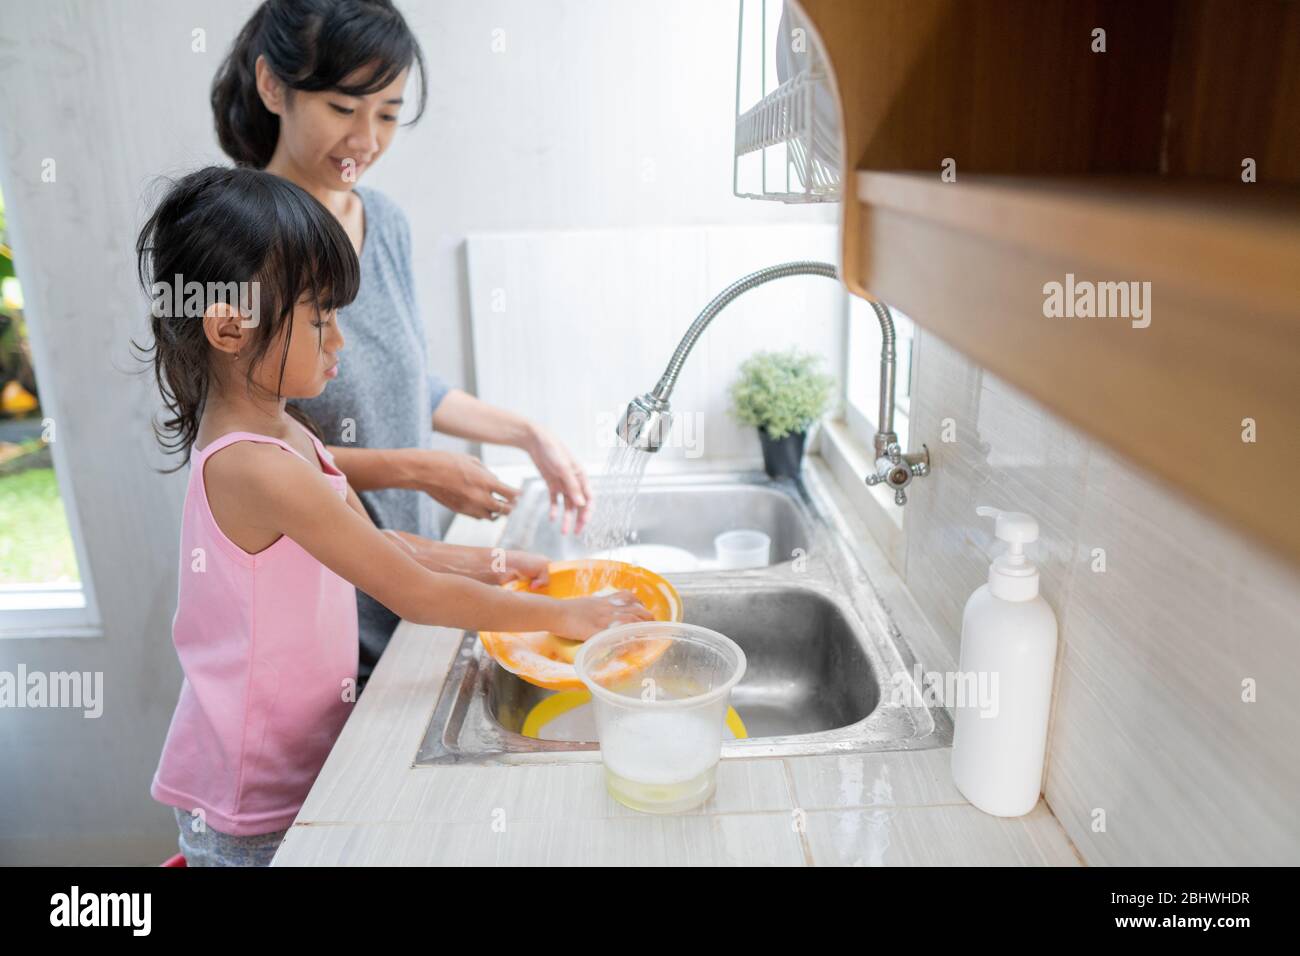 Fille asiatique aidant sa mère dans la cuisine laver les plats ensemble Banque D'Images